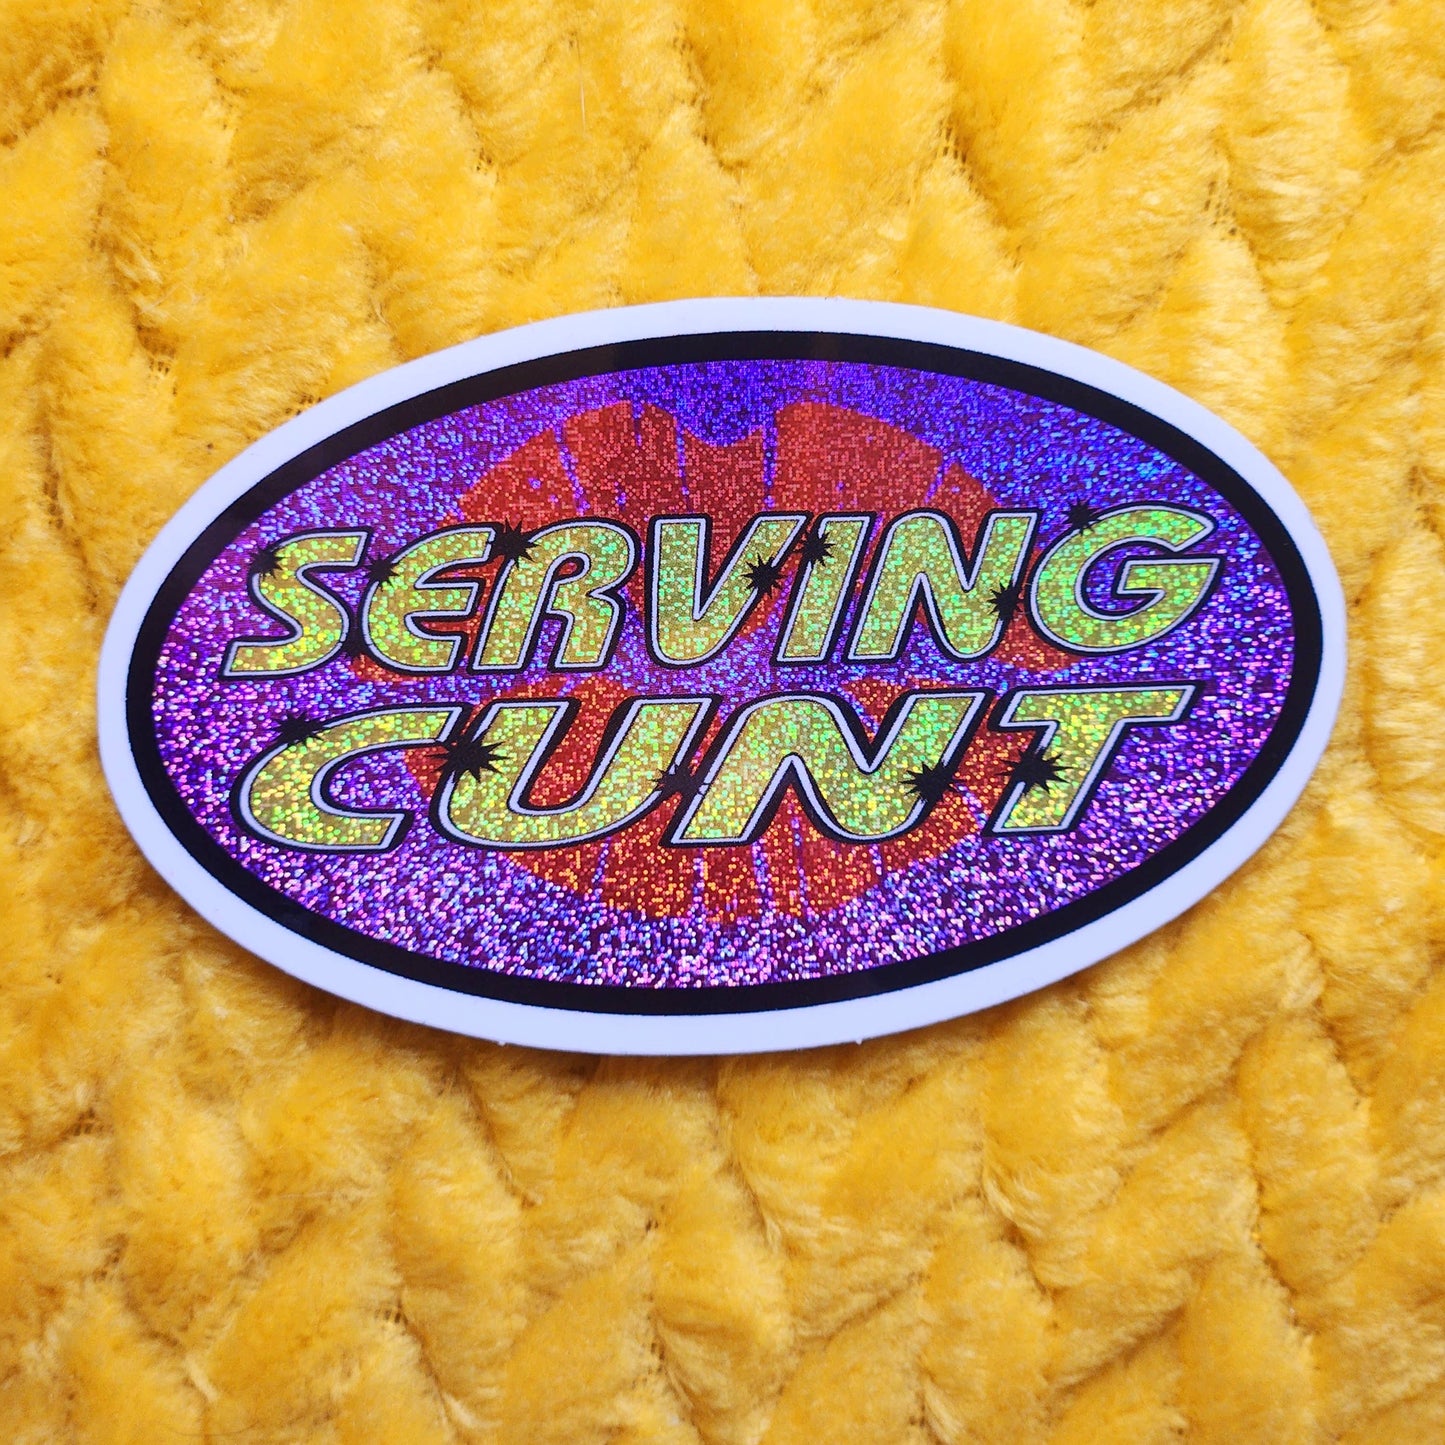 Serving cunt sticker funny gen z 90s retro waterproof: Glitter